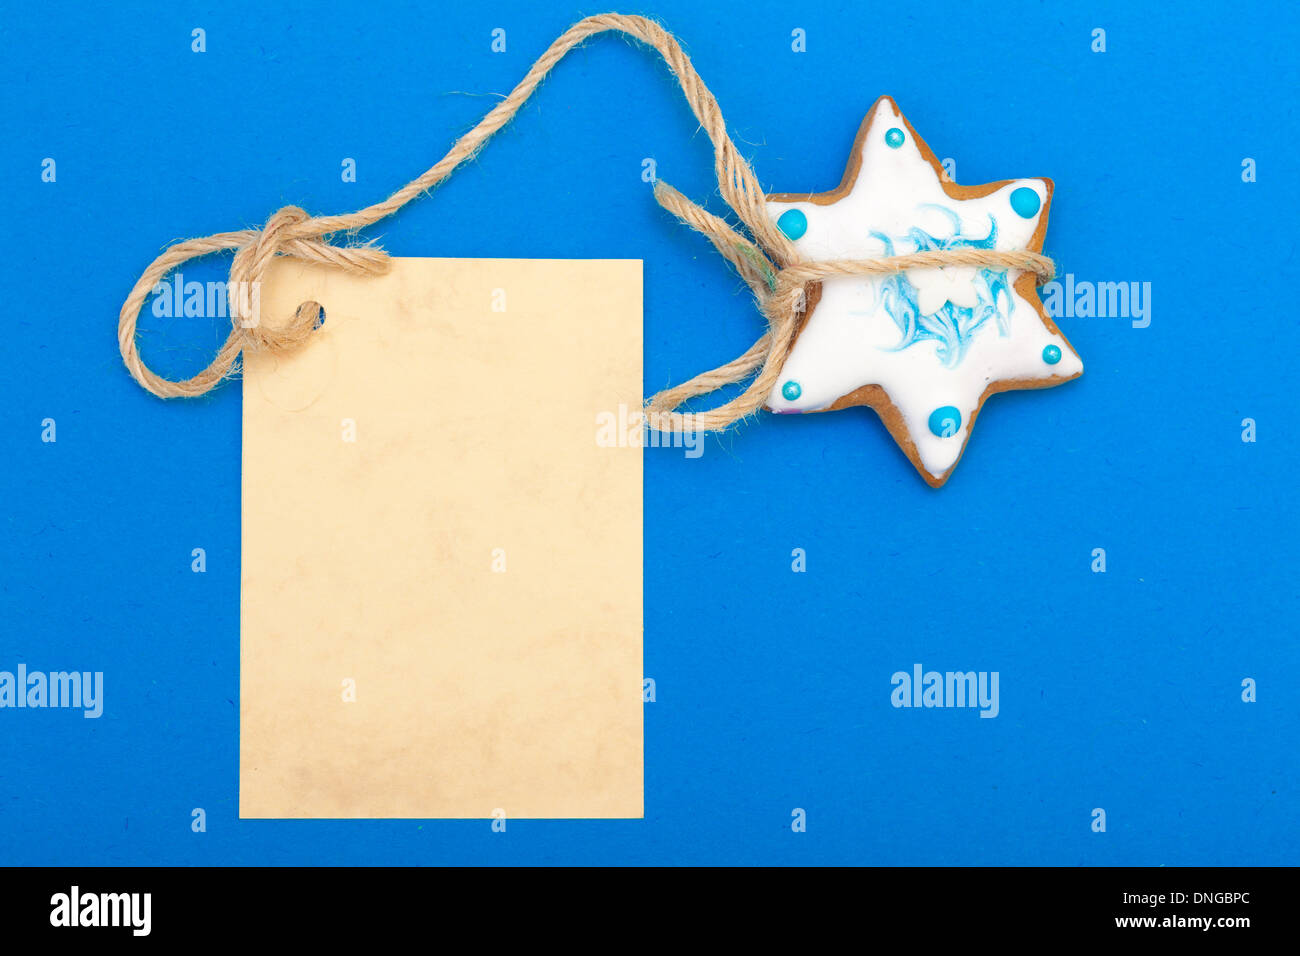 Weihnachten snacks Lebkuchen Cookie Stern mit leeren Papier-Banner-Werbung auf blauem Hintergrund Stockfoto